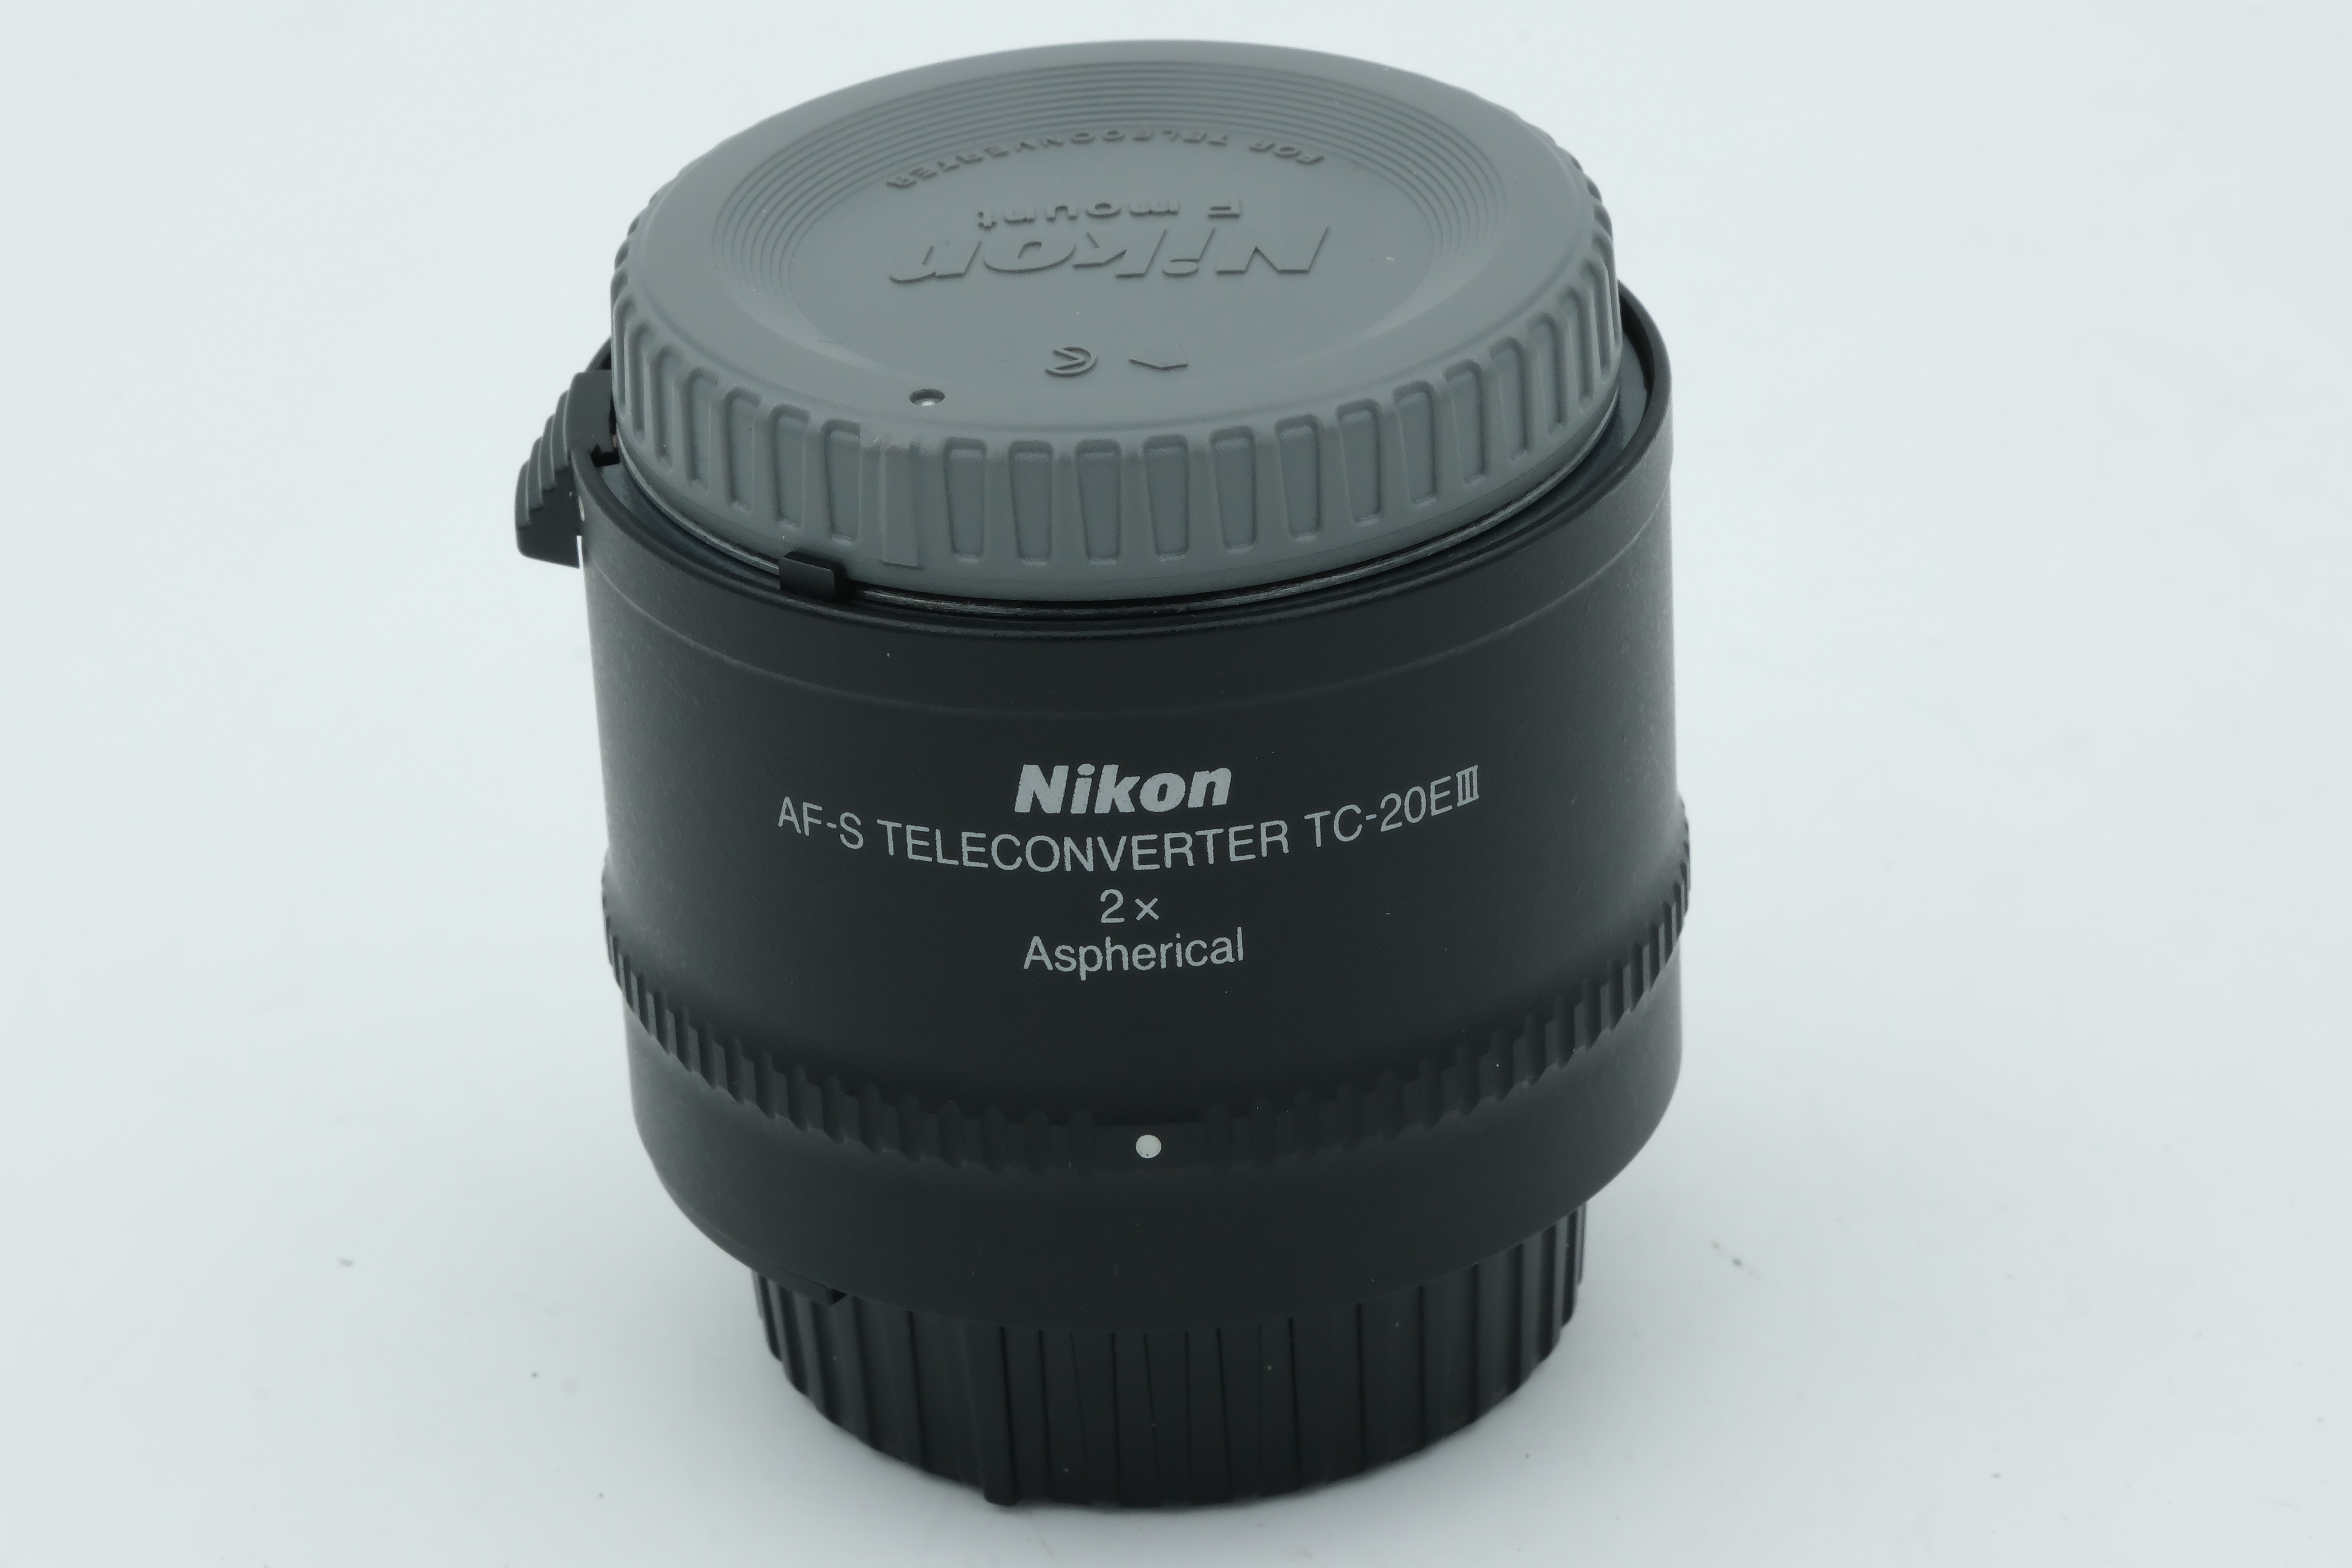 Nikon AF-S Teleconverter TC-20EIII 2x Bild 01